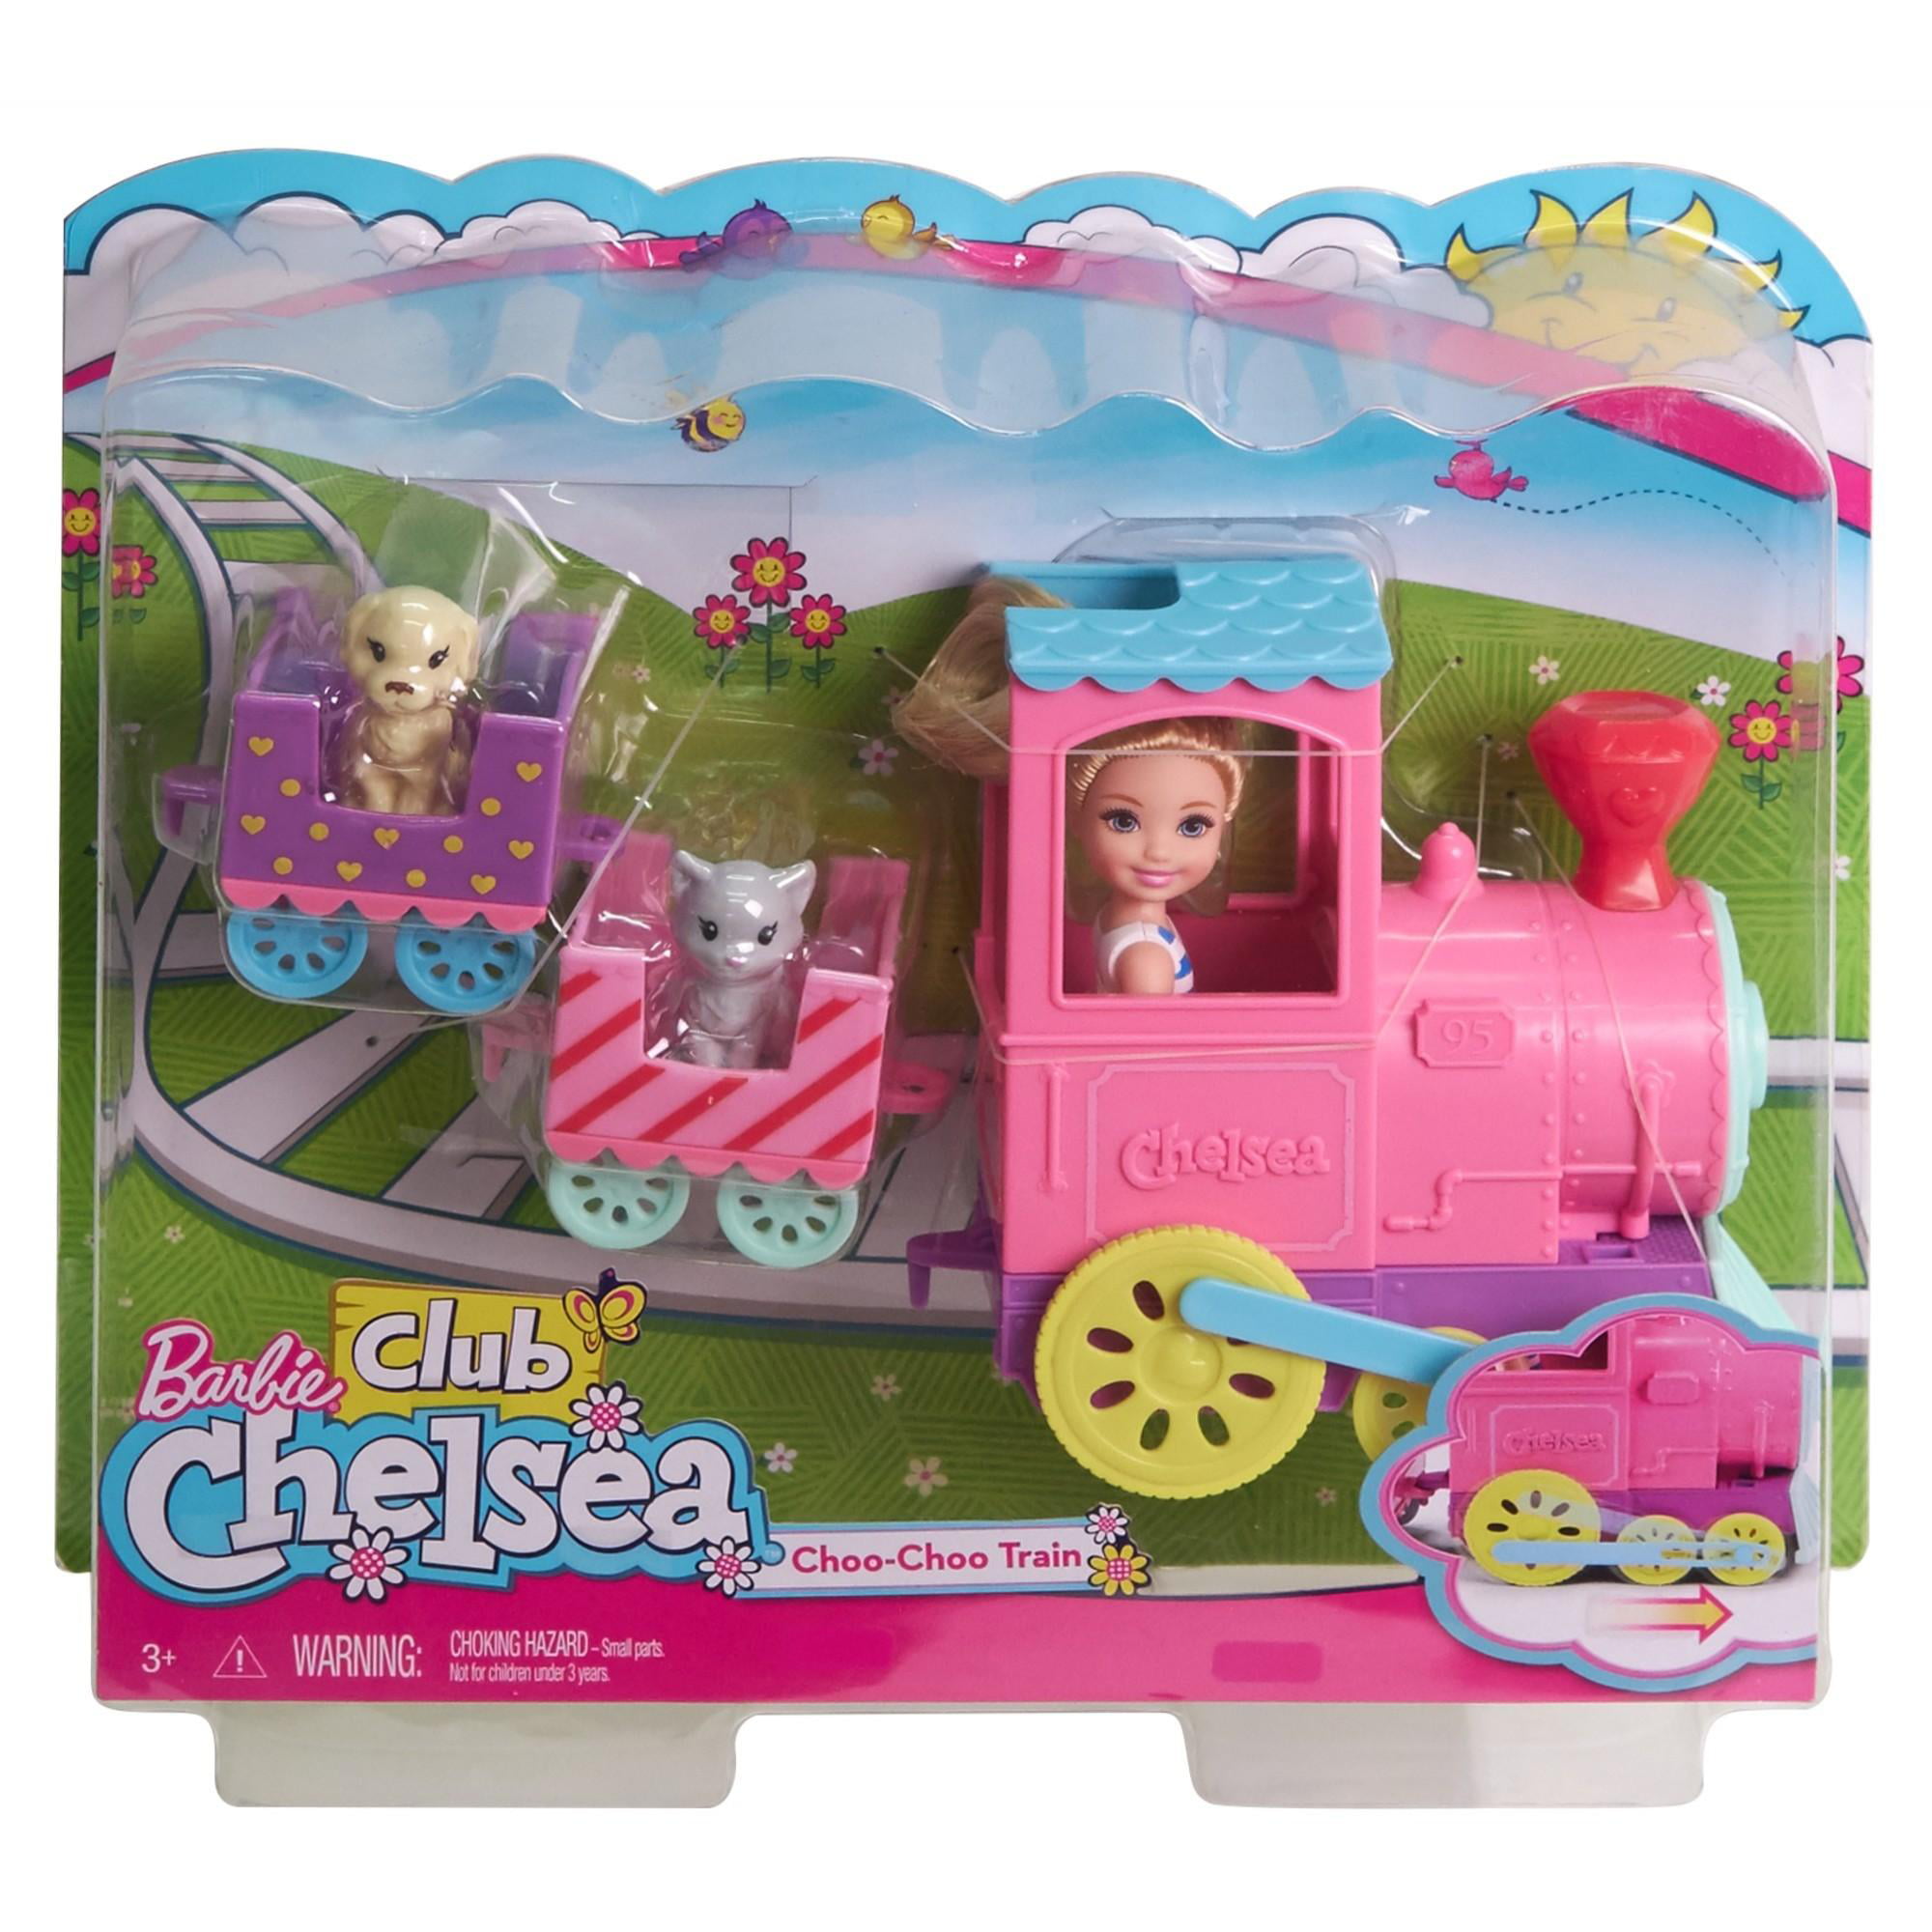 Barbie Club Chelsea Doll and Choo-choo 